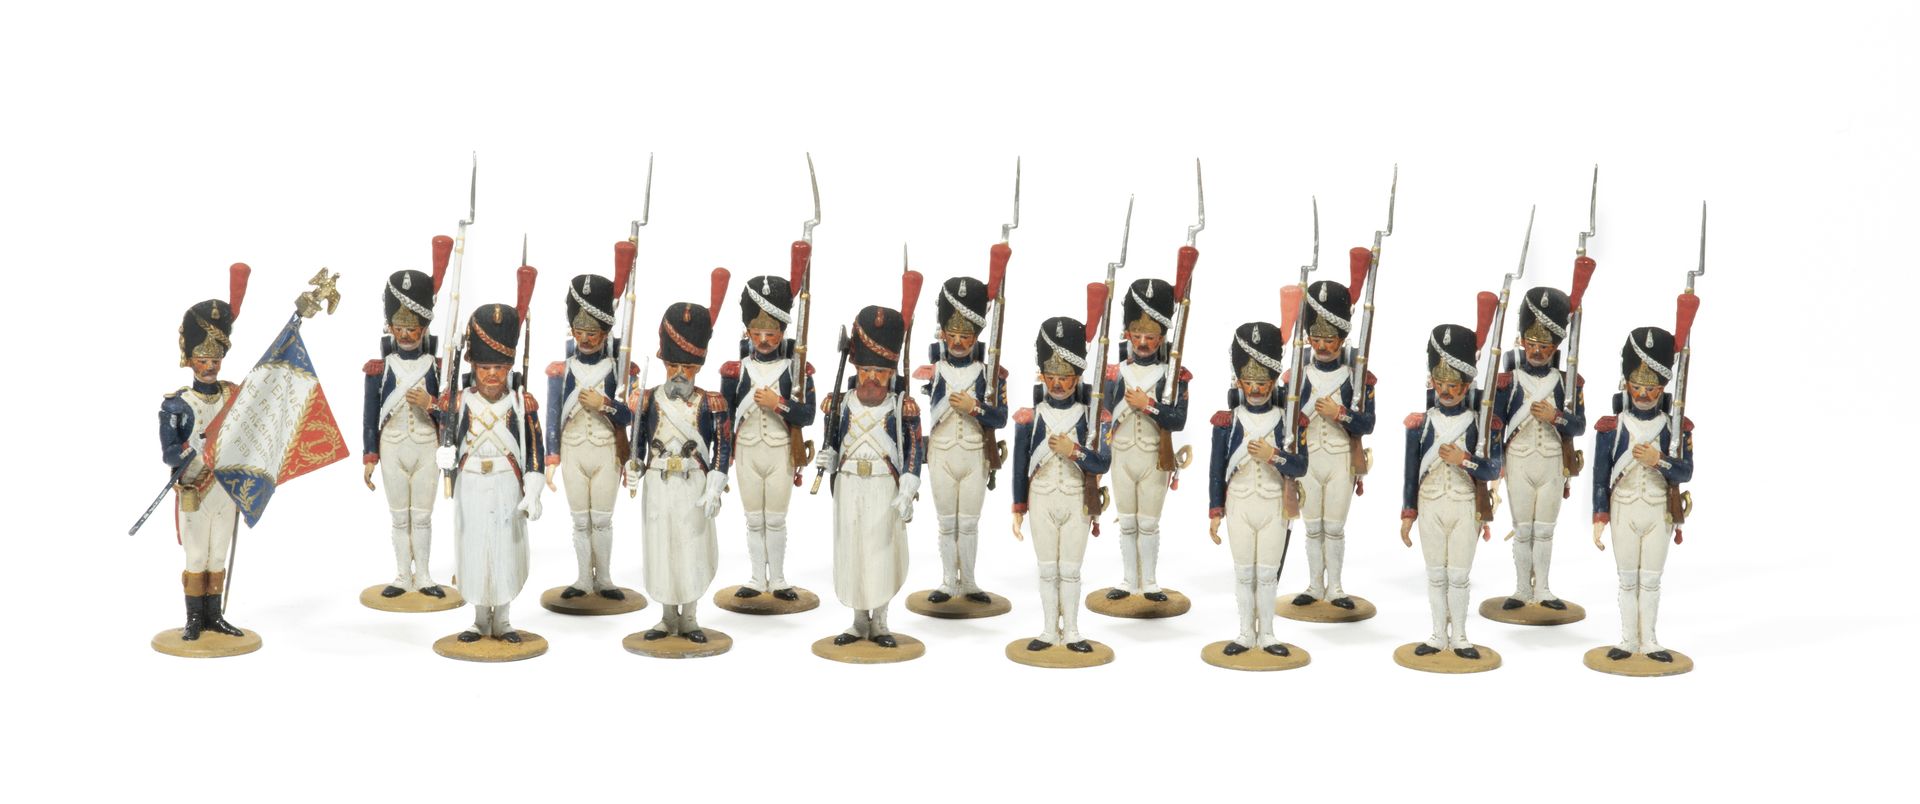 Null Métayer。帝国卫队的第1步兵掷弹兵团。1名步兵军官（手臂被粘回），1面旗帜，1名工兵军士和3名工兵（1个手臂被打断），11名士兵。(16图)。T&hellip;